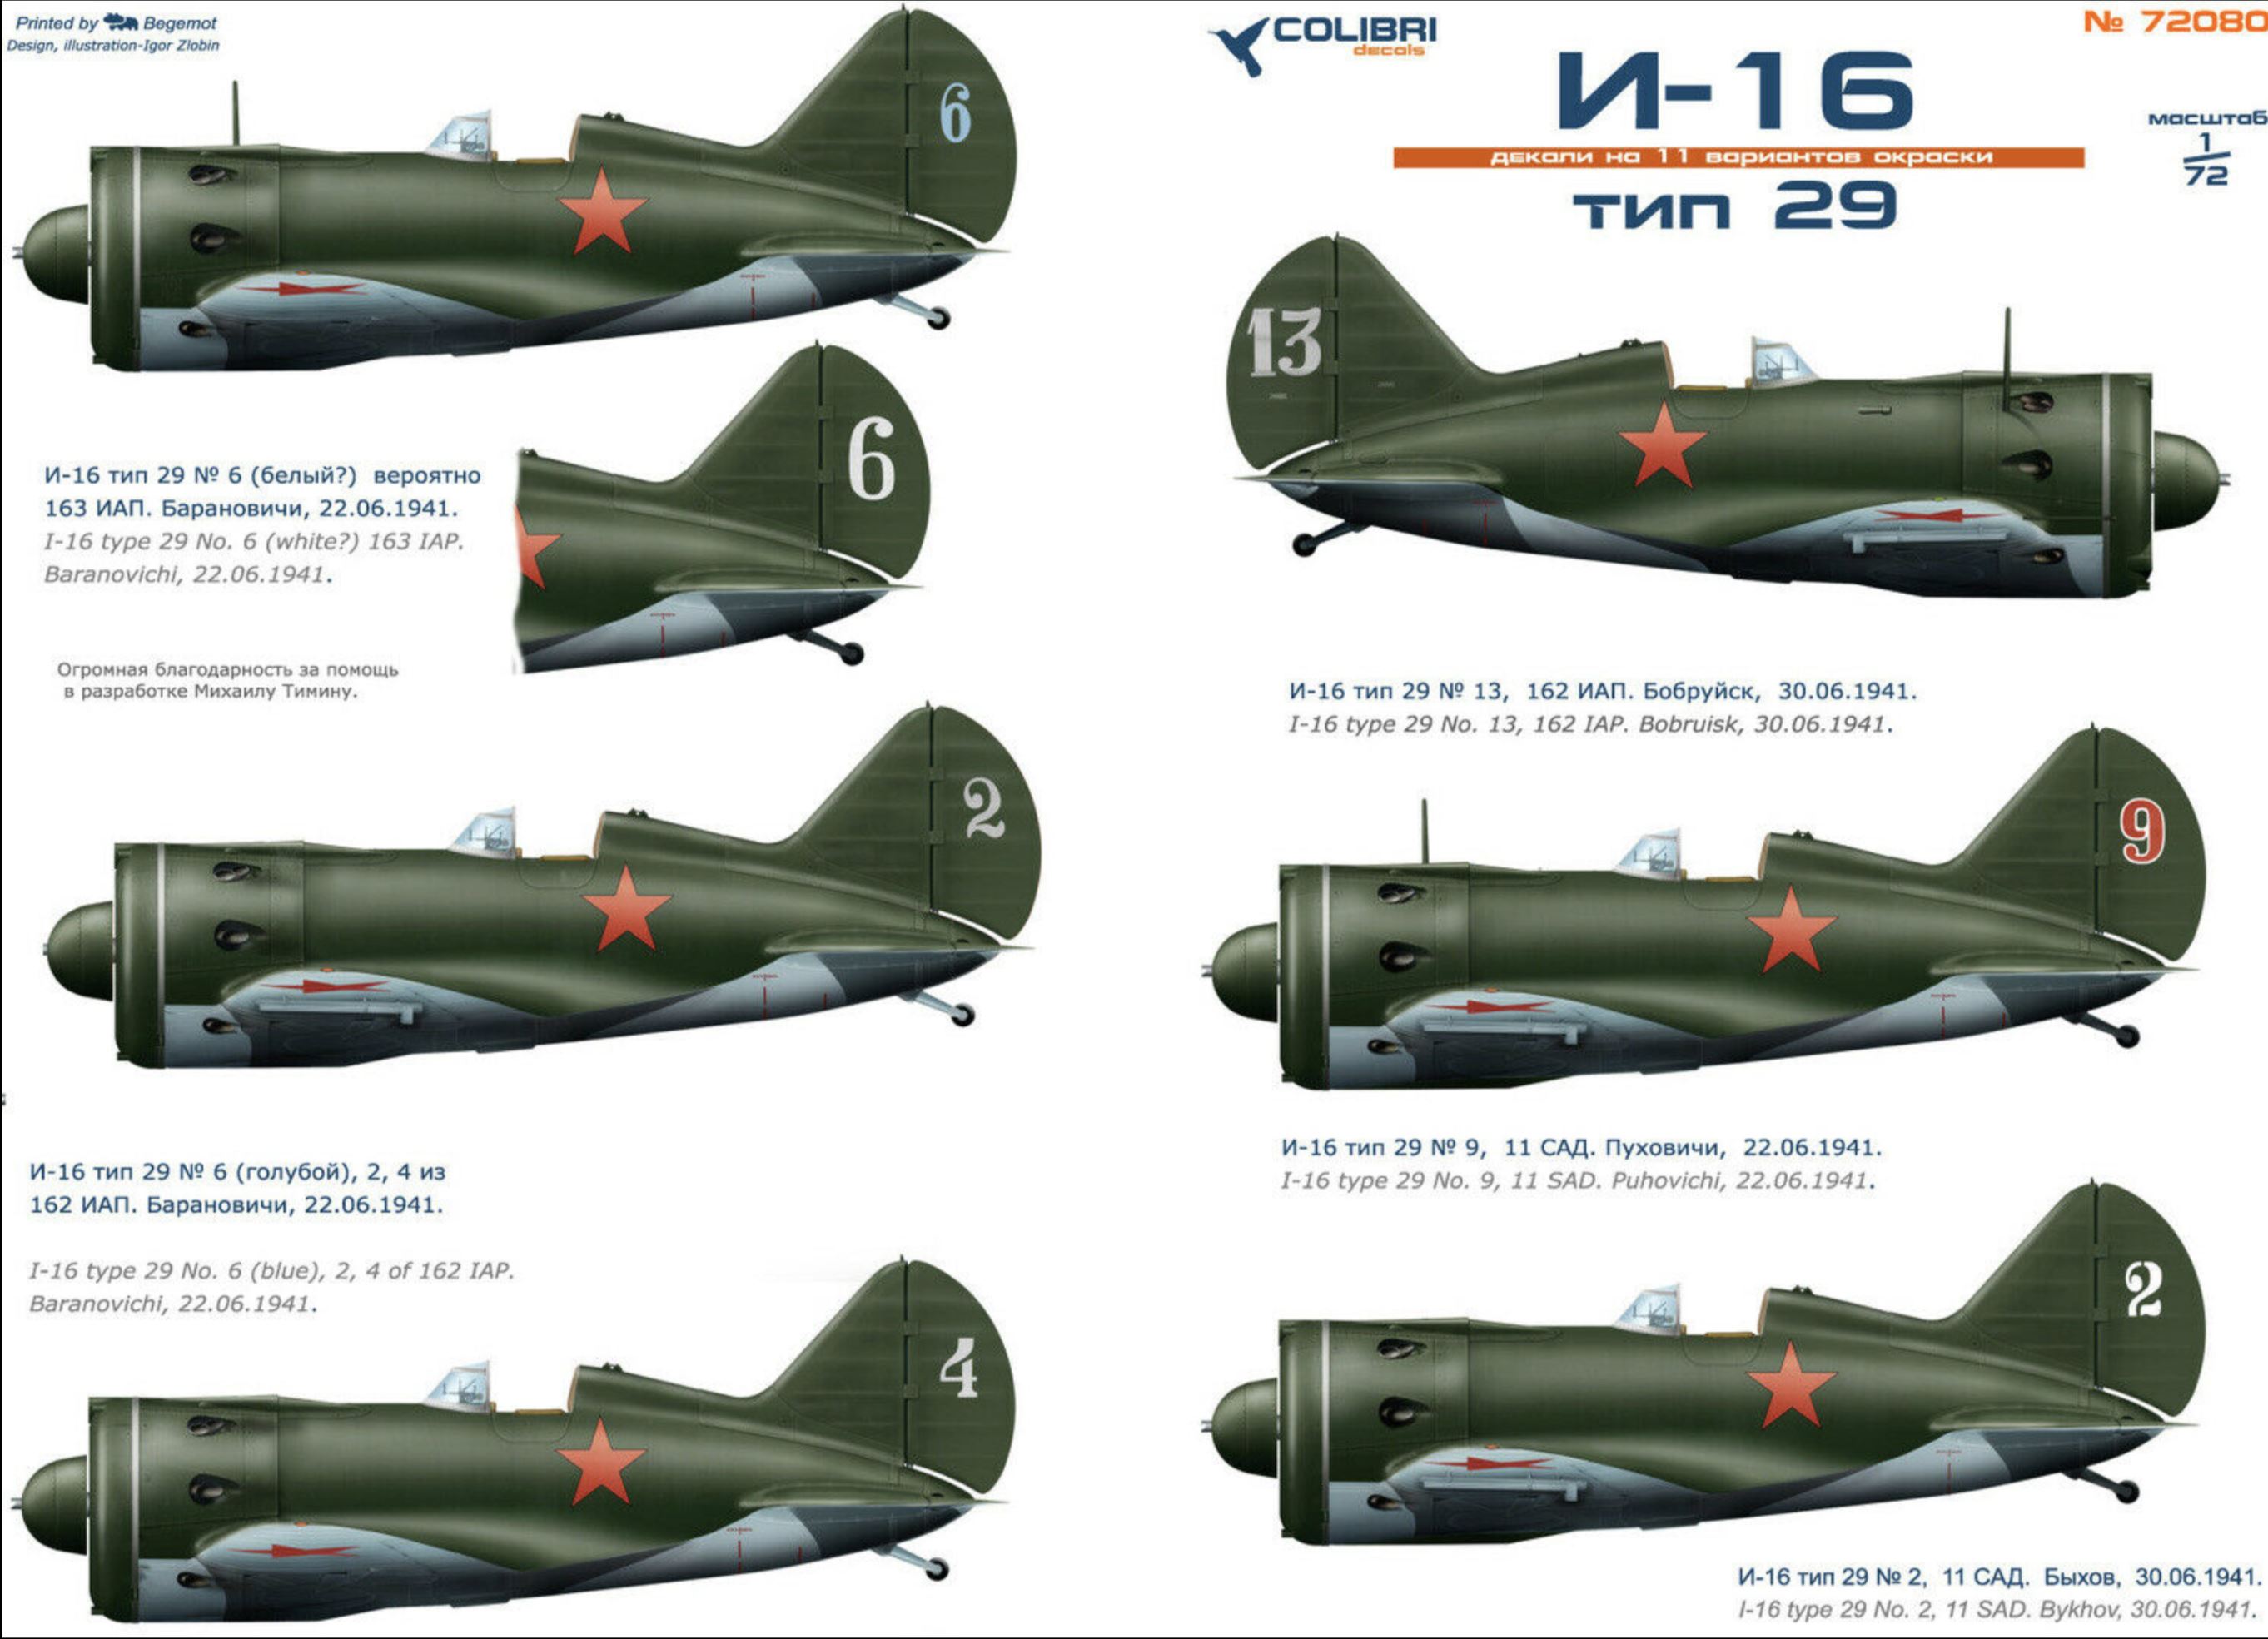 Profiles of various Polikarpov I 16 Rata aircraft by Colibri decals no 72080 0A